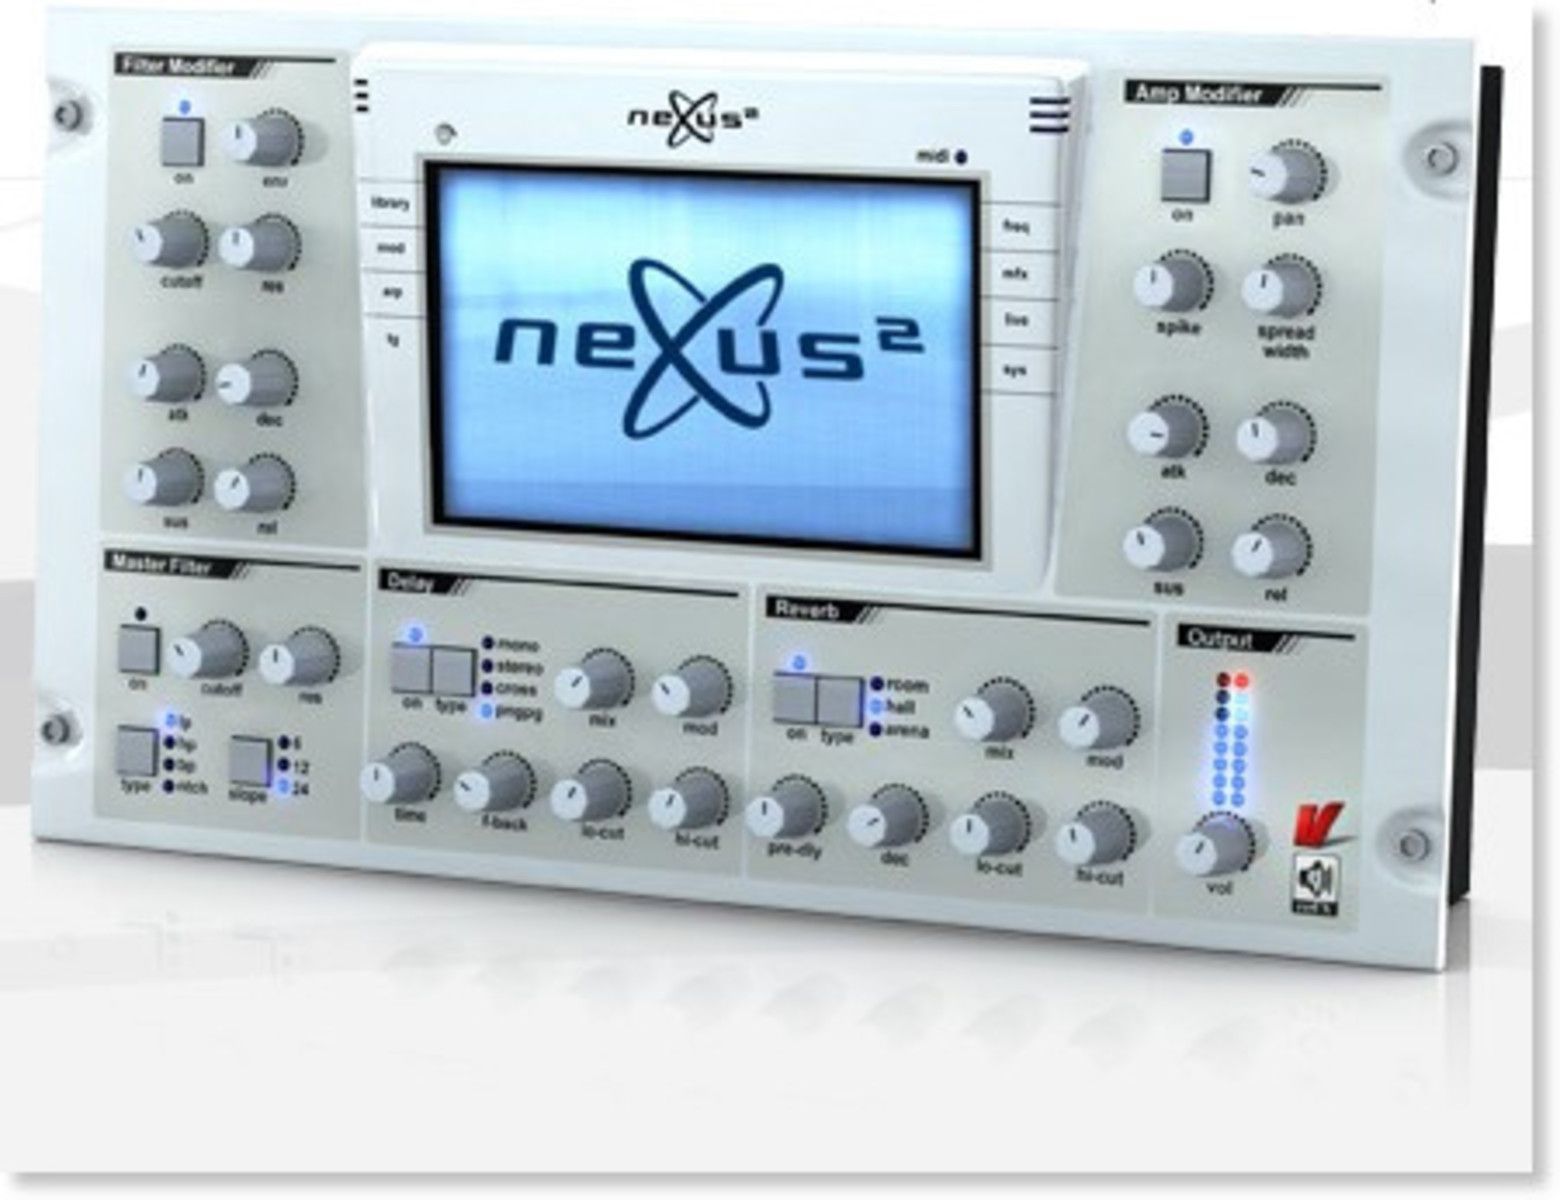 nexus 2 download